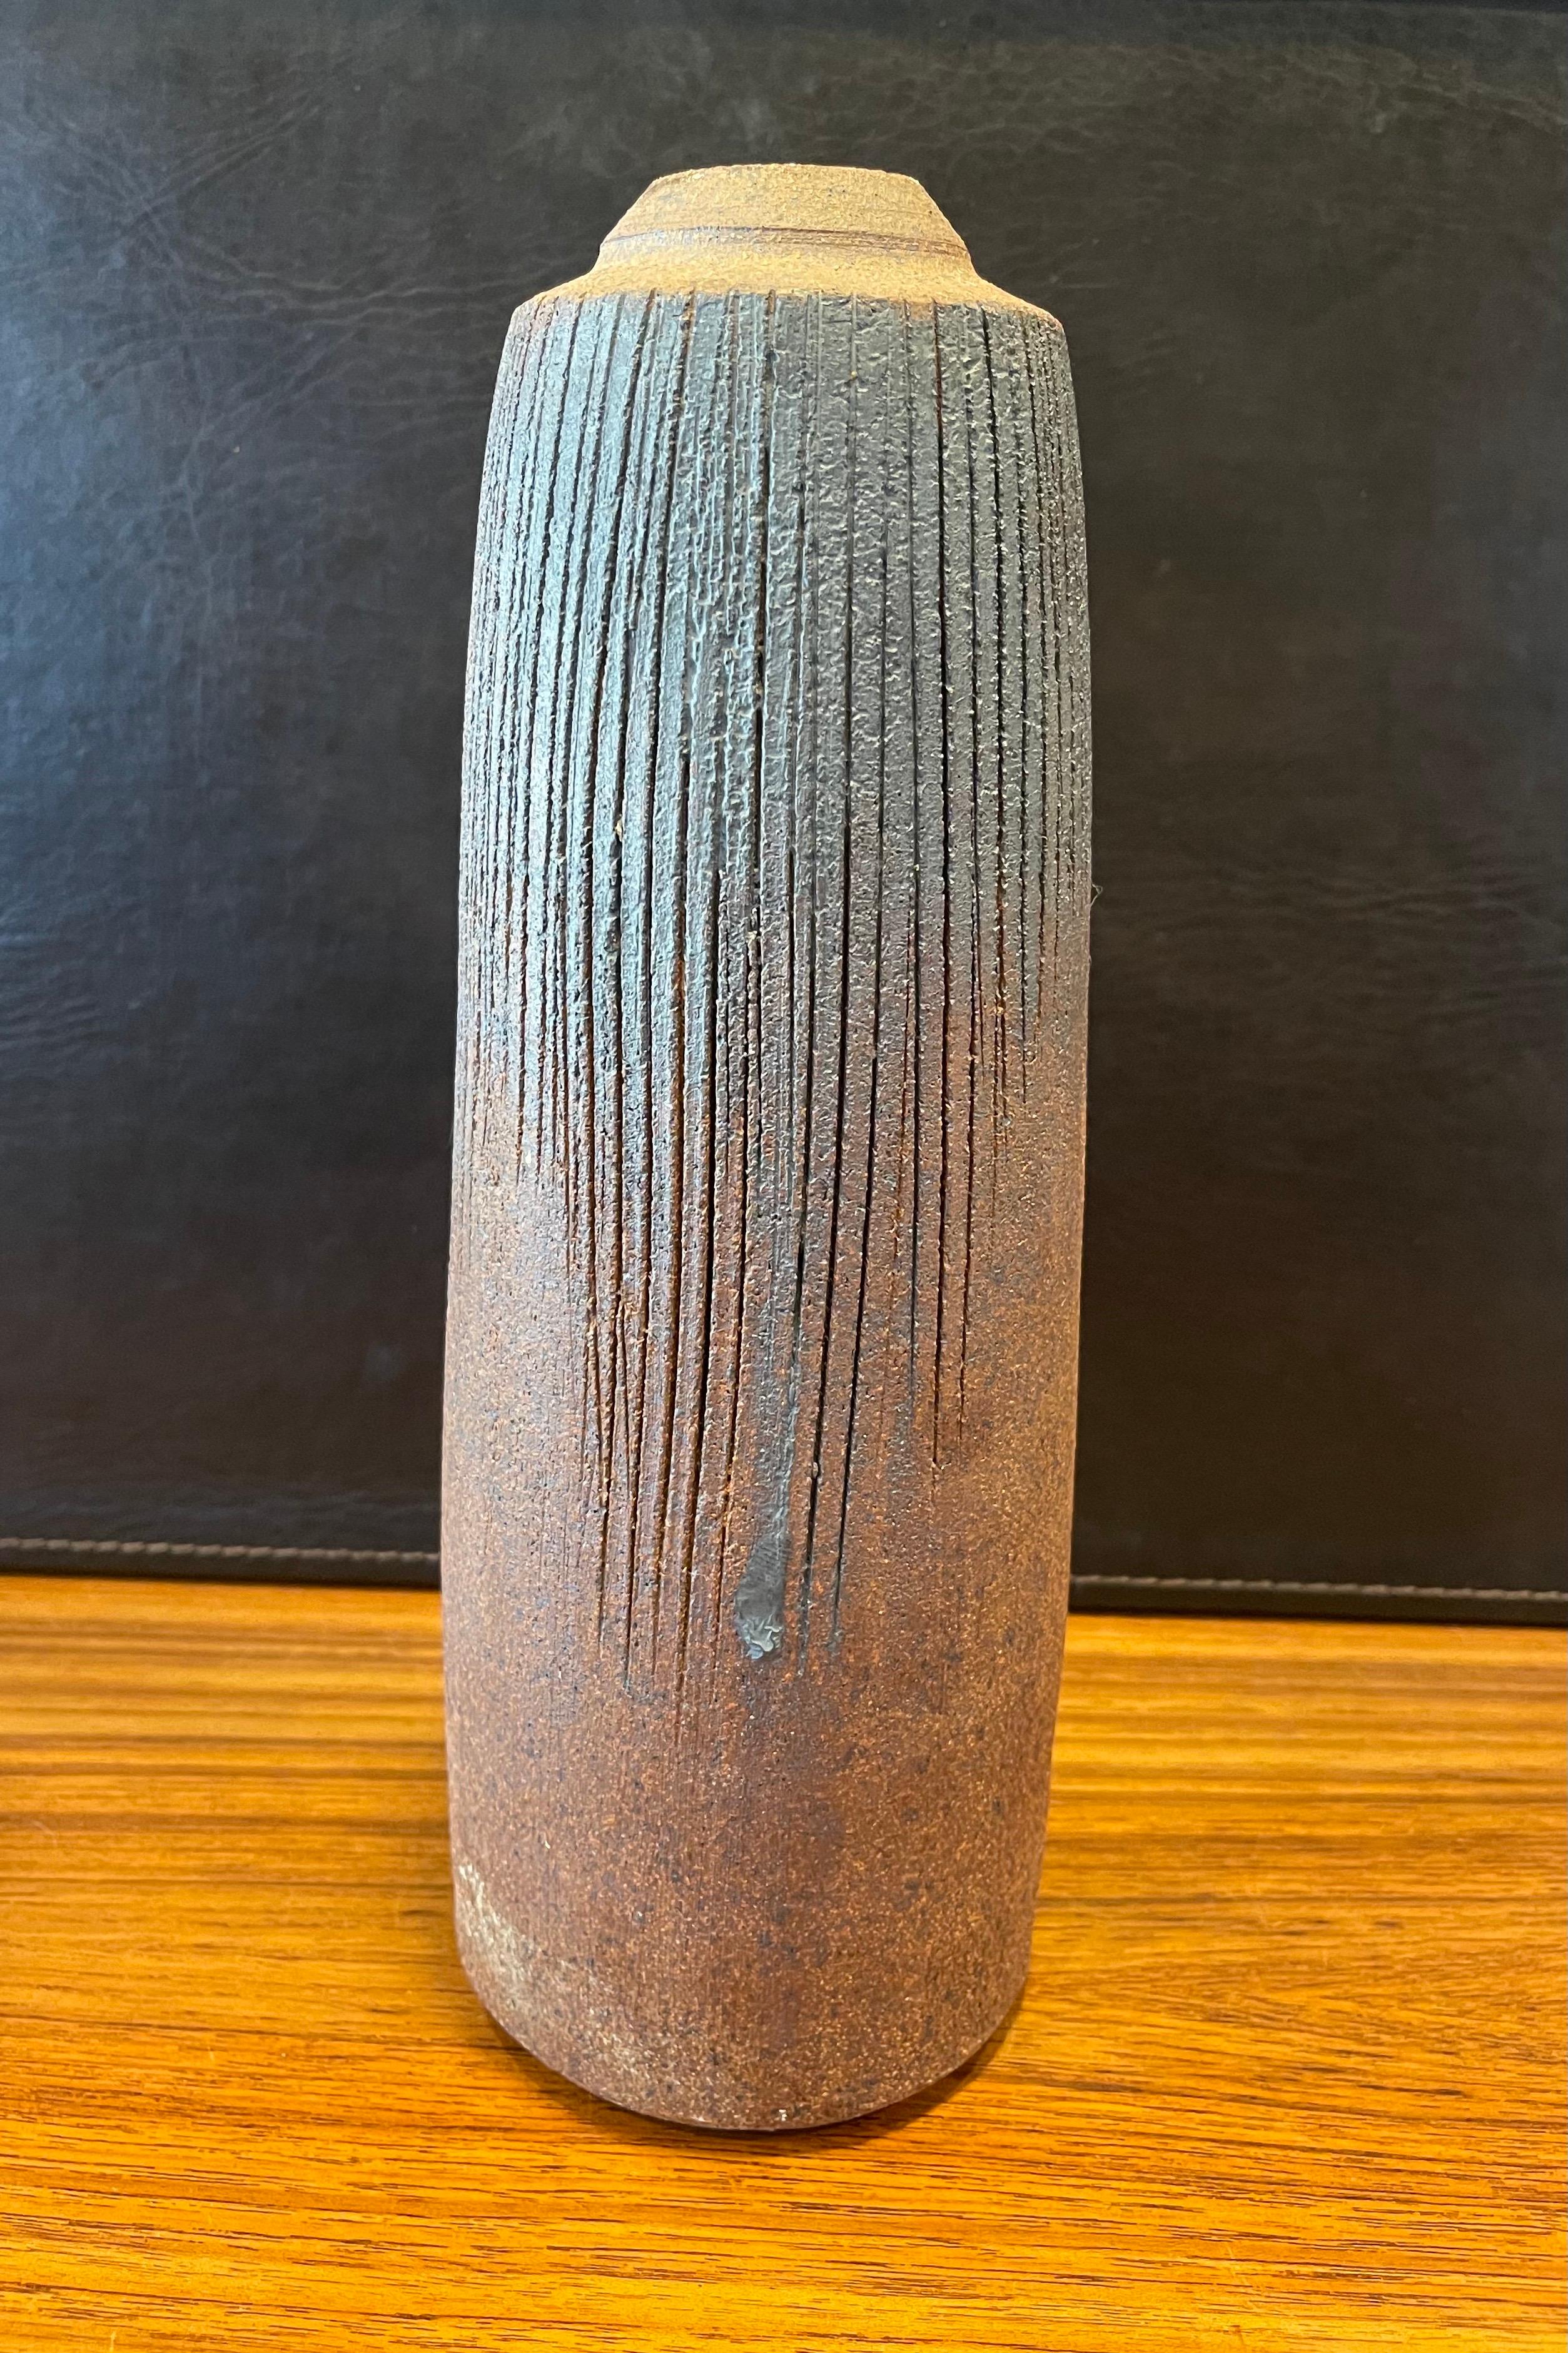 Un très joli vase en faïence de la California studio pottery avec de beaux tons de terre bleu grisâtre, beige et brun, vers les années 1970. Le vase a un design, un aspect et une forme magnifiques et est signé 